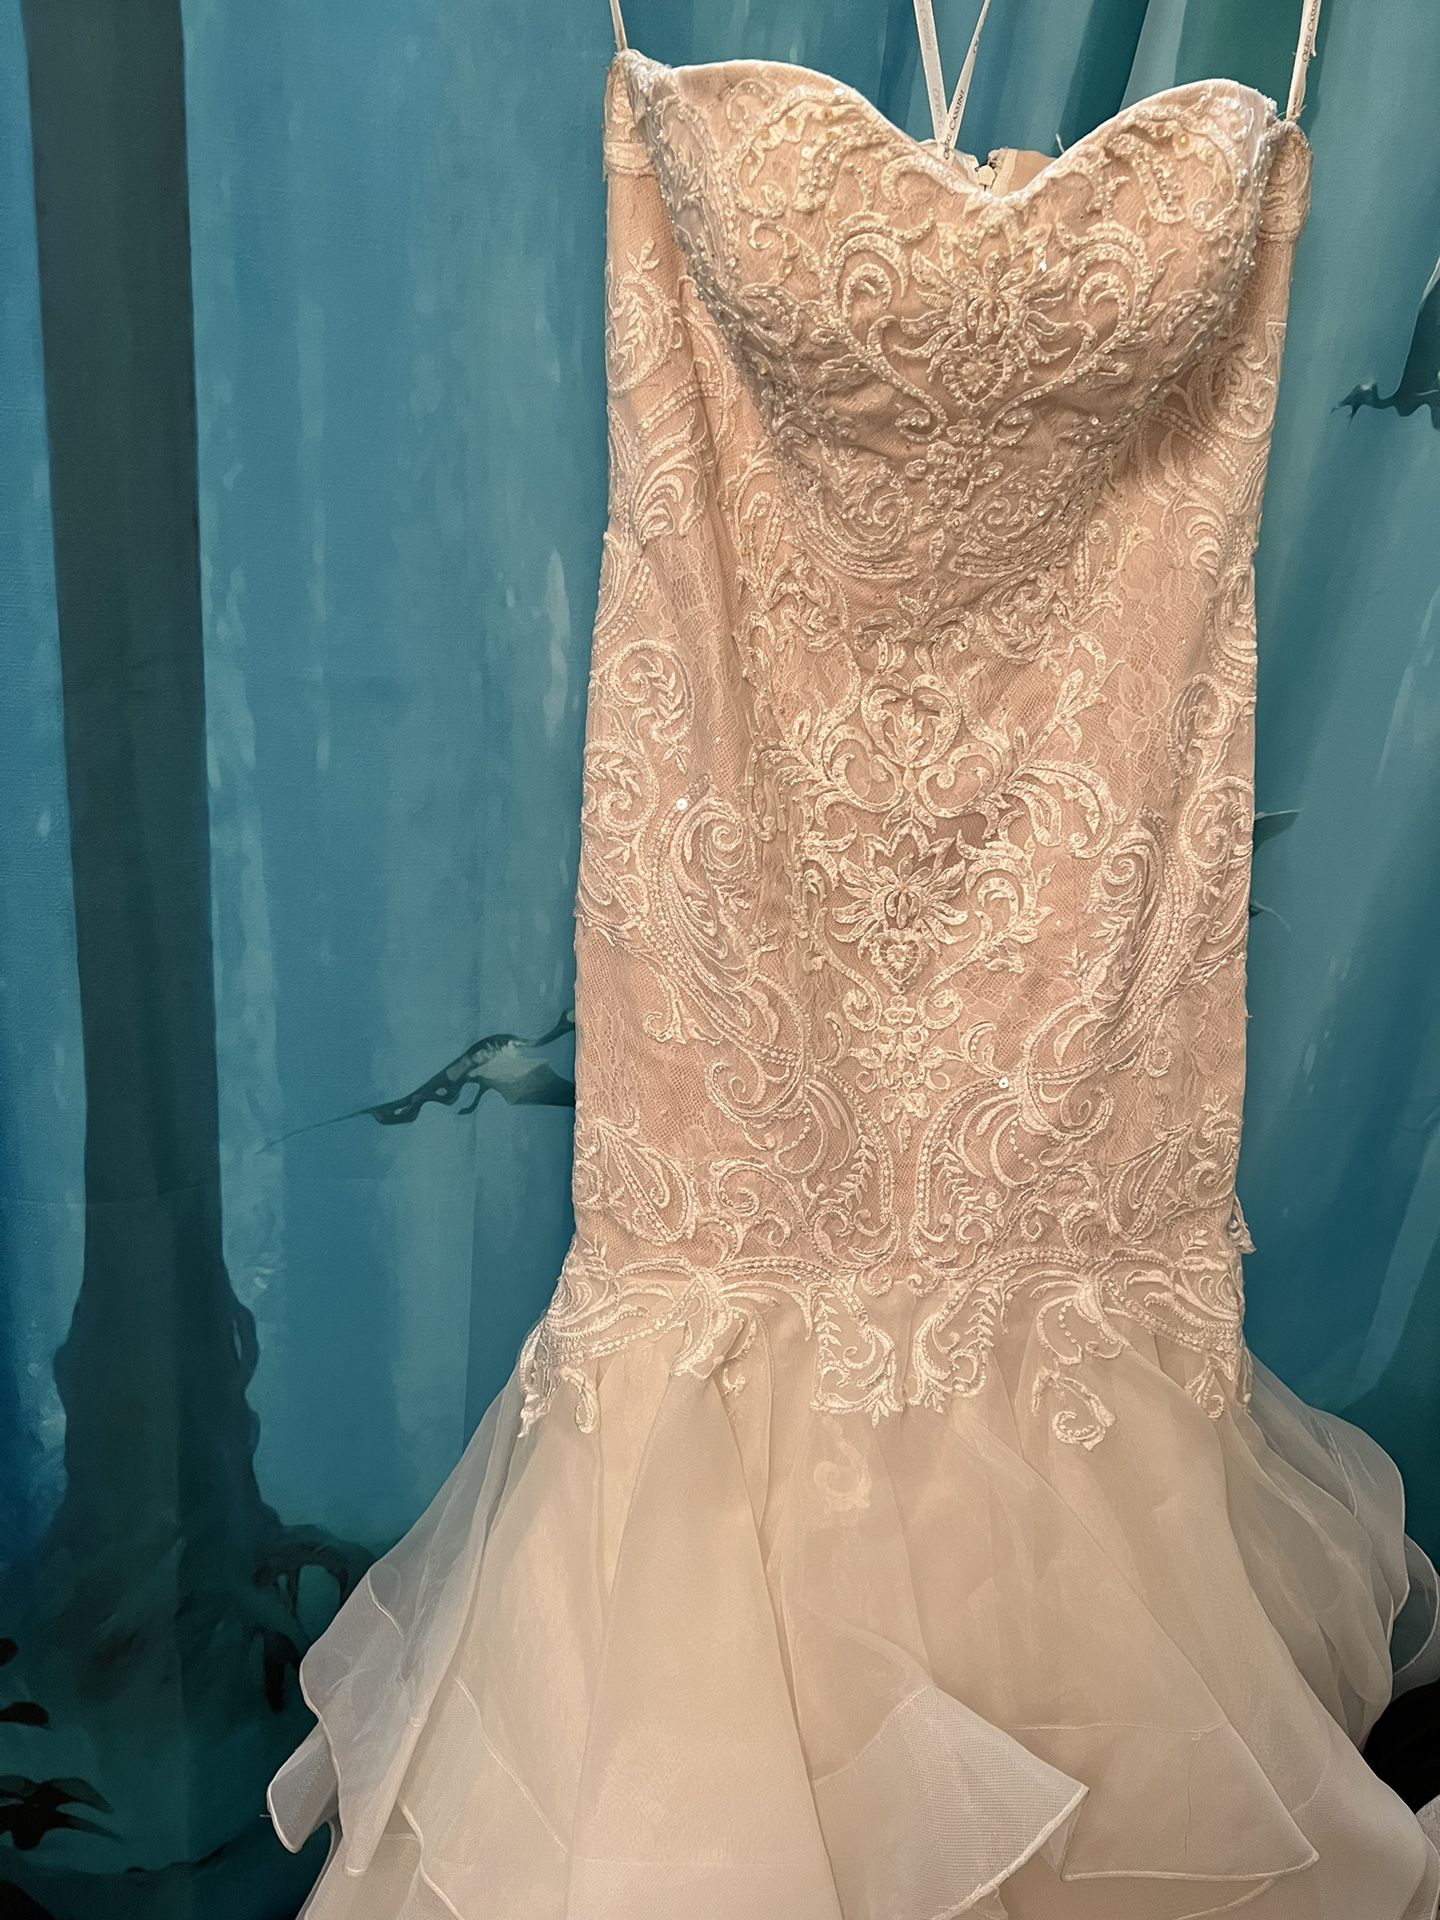 Wedding Dress Size 12 With Veil